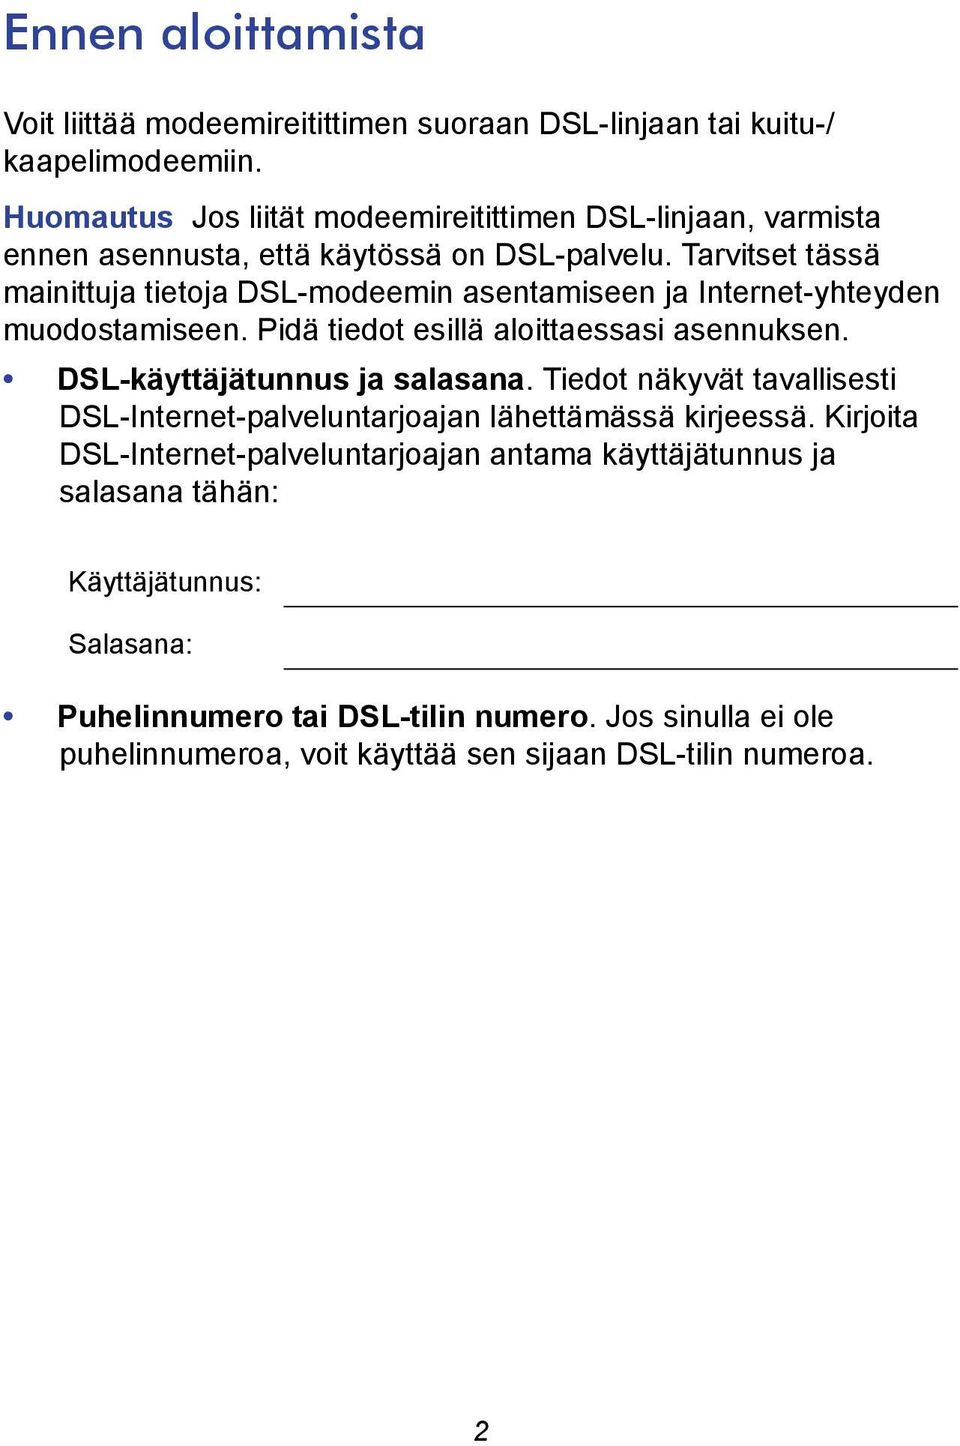 Tarvitset tässä mainittuja tietoja DSL-modeemin asentamiseen ja Internet-yhteyden muodostamiseen. Pidä tiedot esillä aloittaessasi asennuksen.